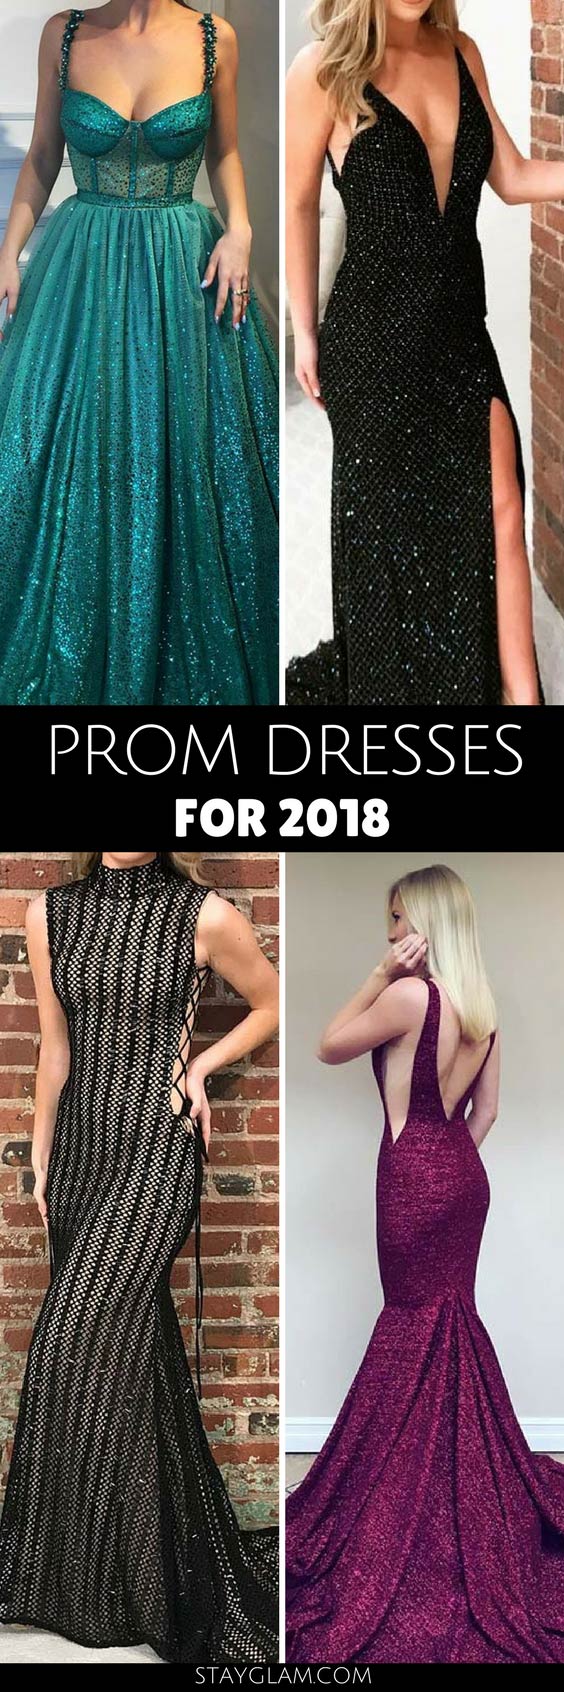 25 שמלות לנשף יפה עבור 2018